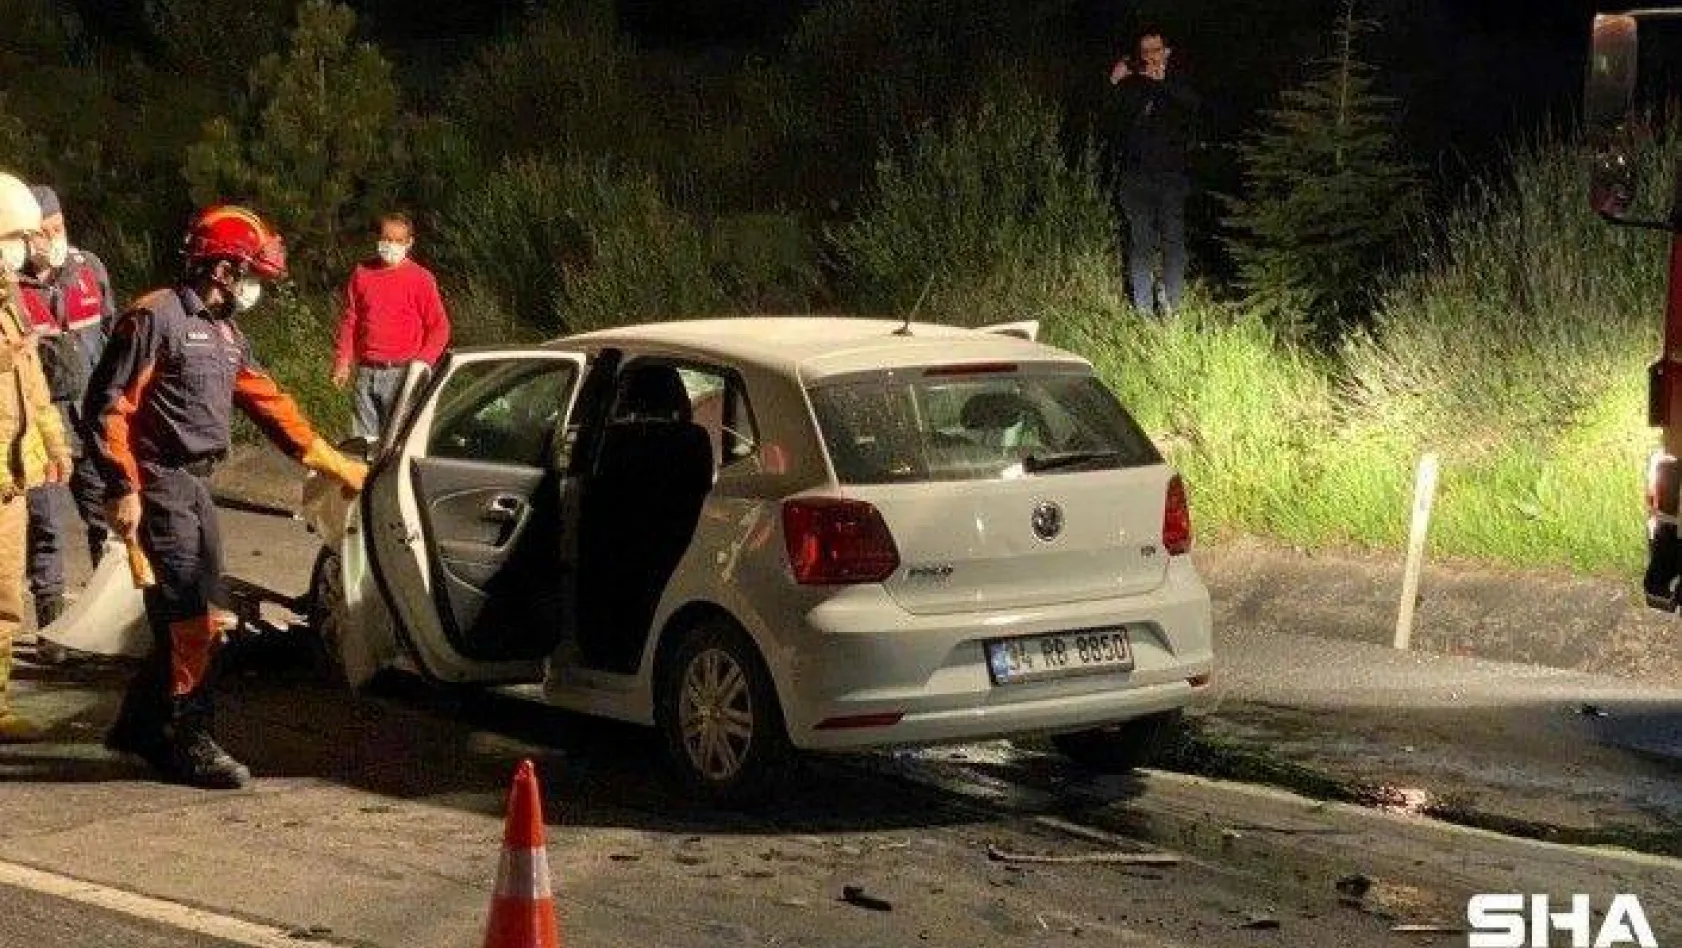 Büyükçavuşlu'da Otomobil Kamyona Arkadan Çarptı: 1 Ölü